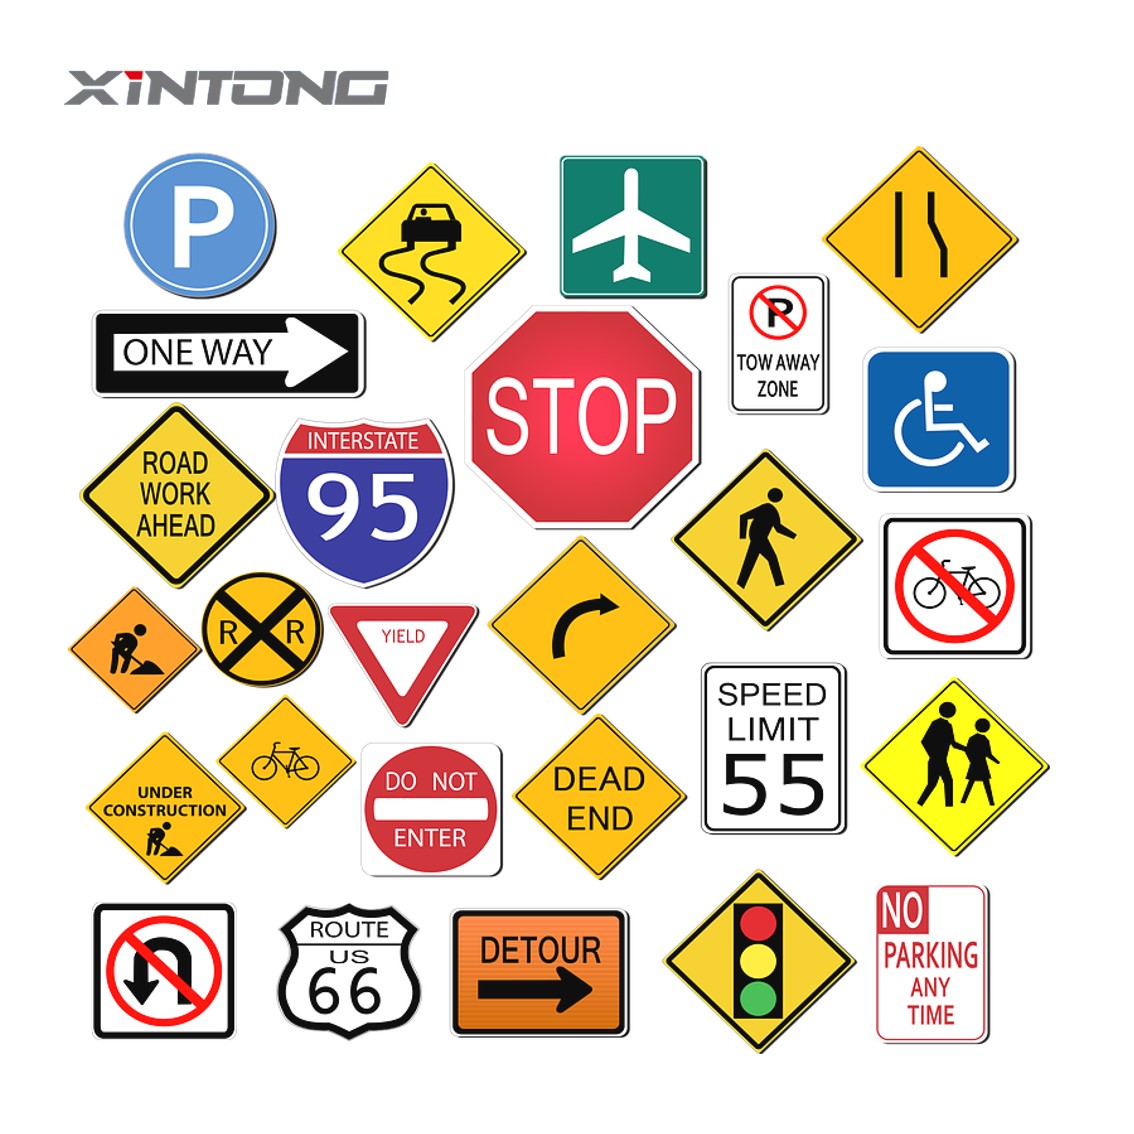 XINTONG Traffic Warning Road Sign